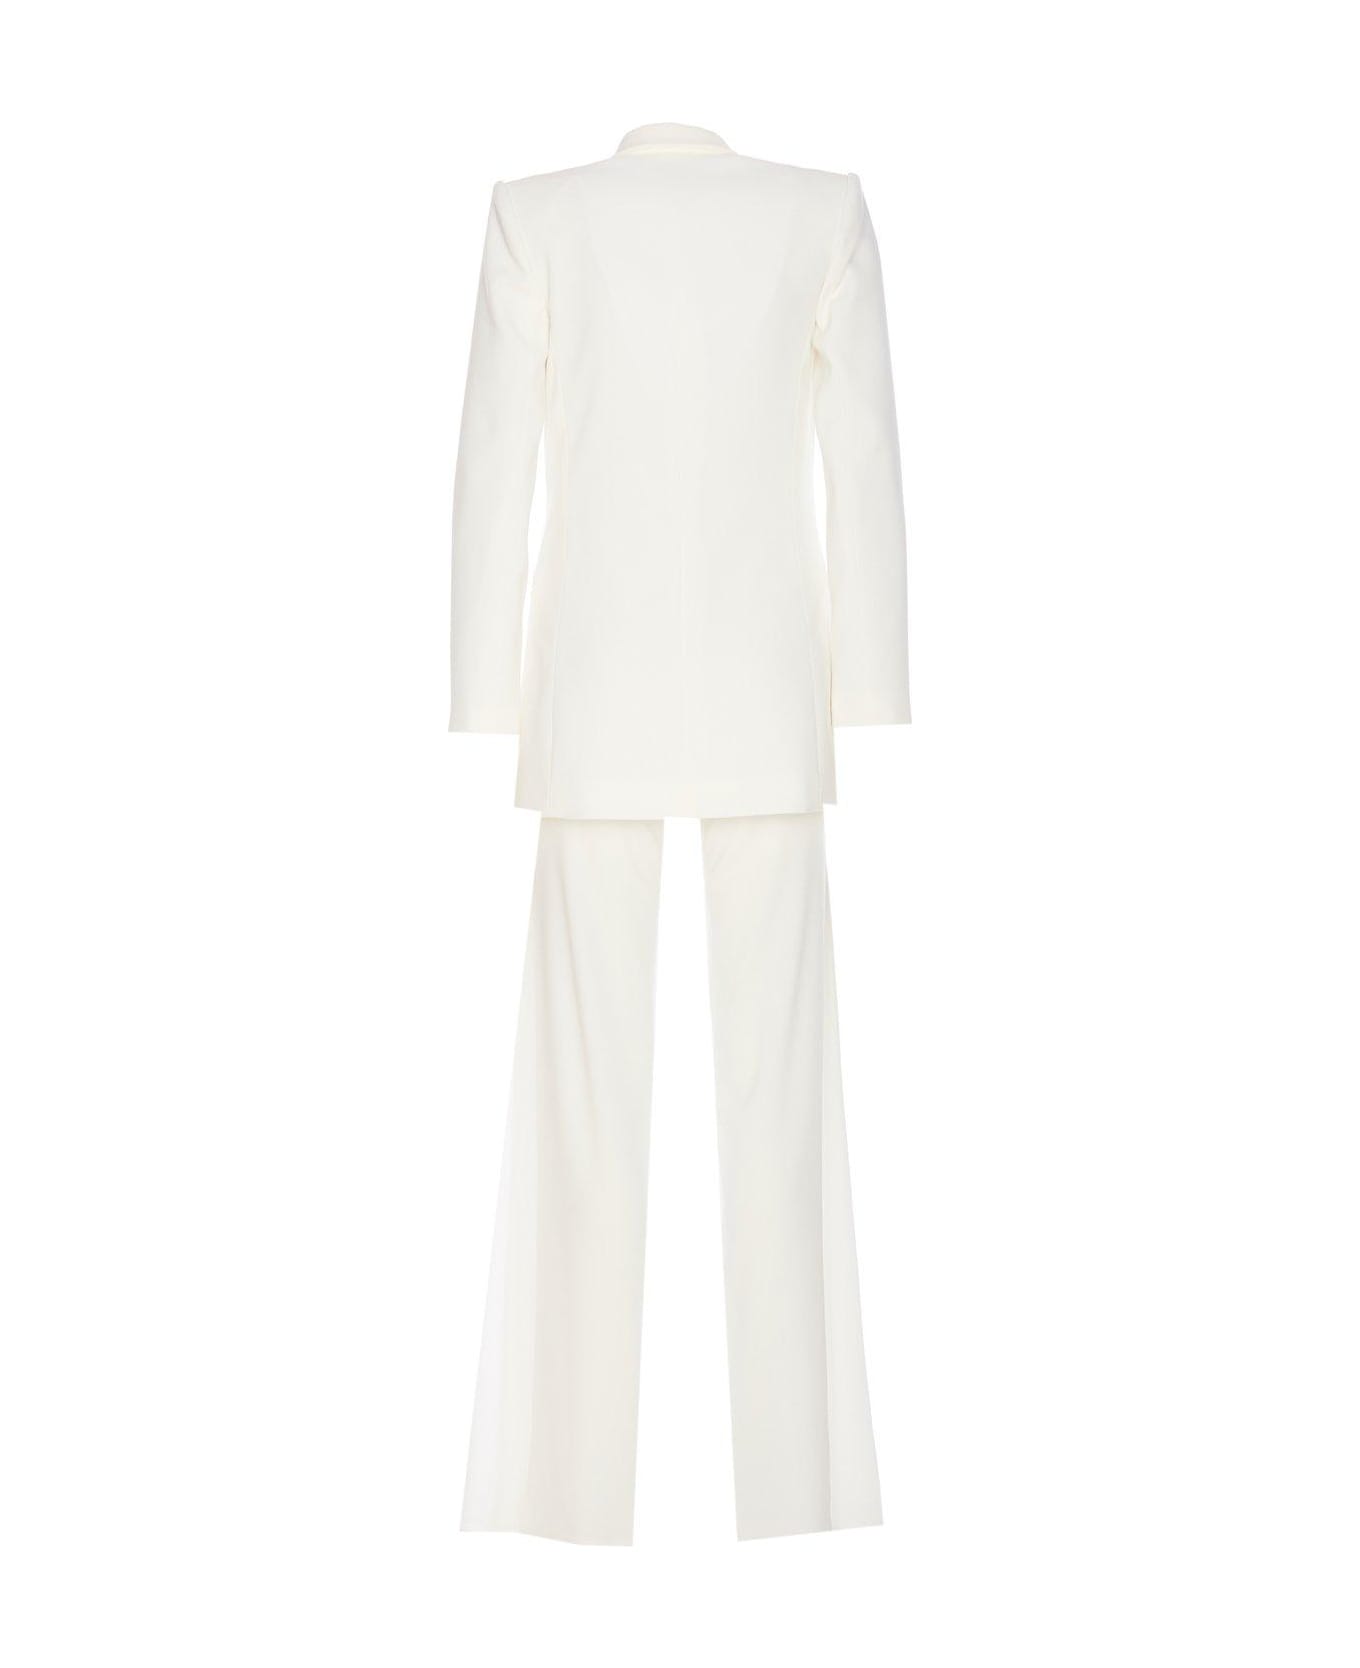 Elisabetta Franchi Logo Plaque Peak Lapels Suit - Ivory